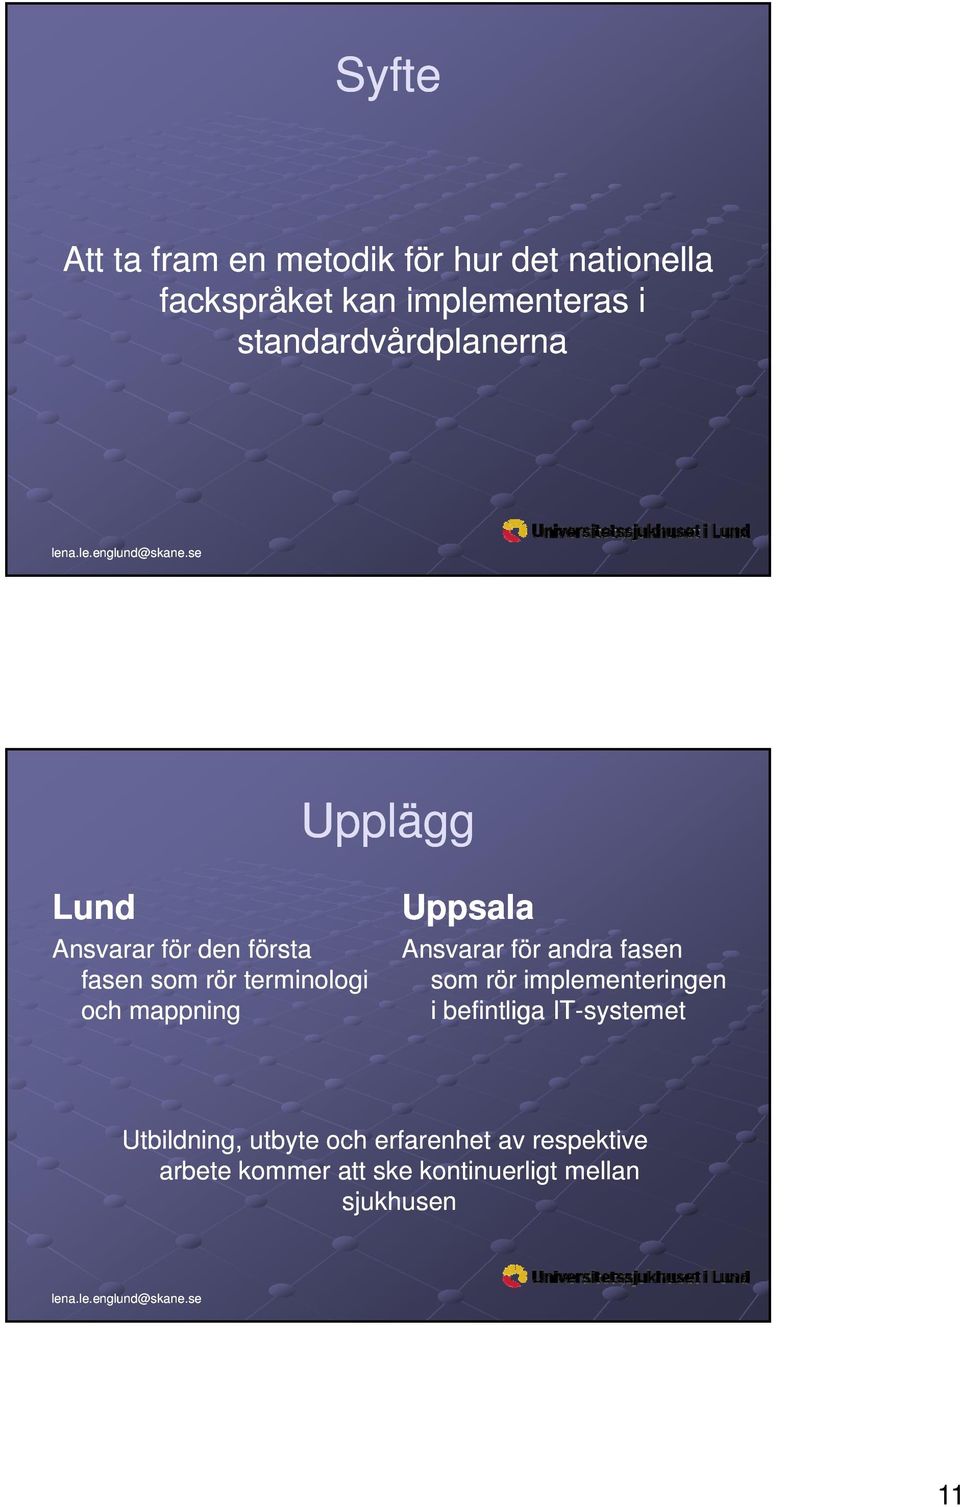 mappning Uppsala Ansvarar för andra fasen som rör implementeringen i befintliga IT-systemet